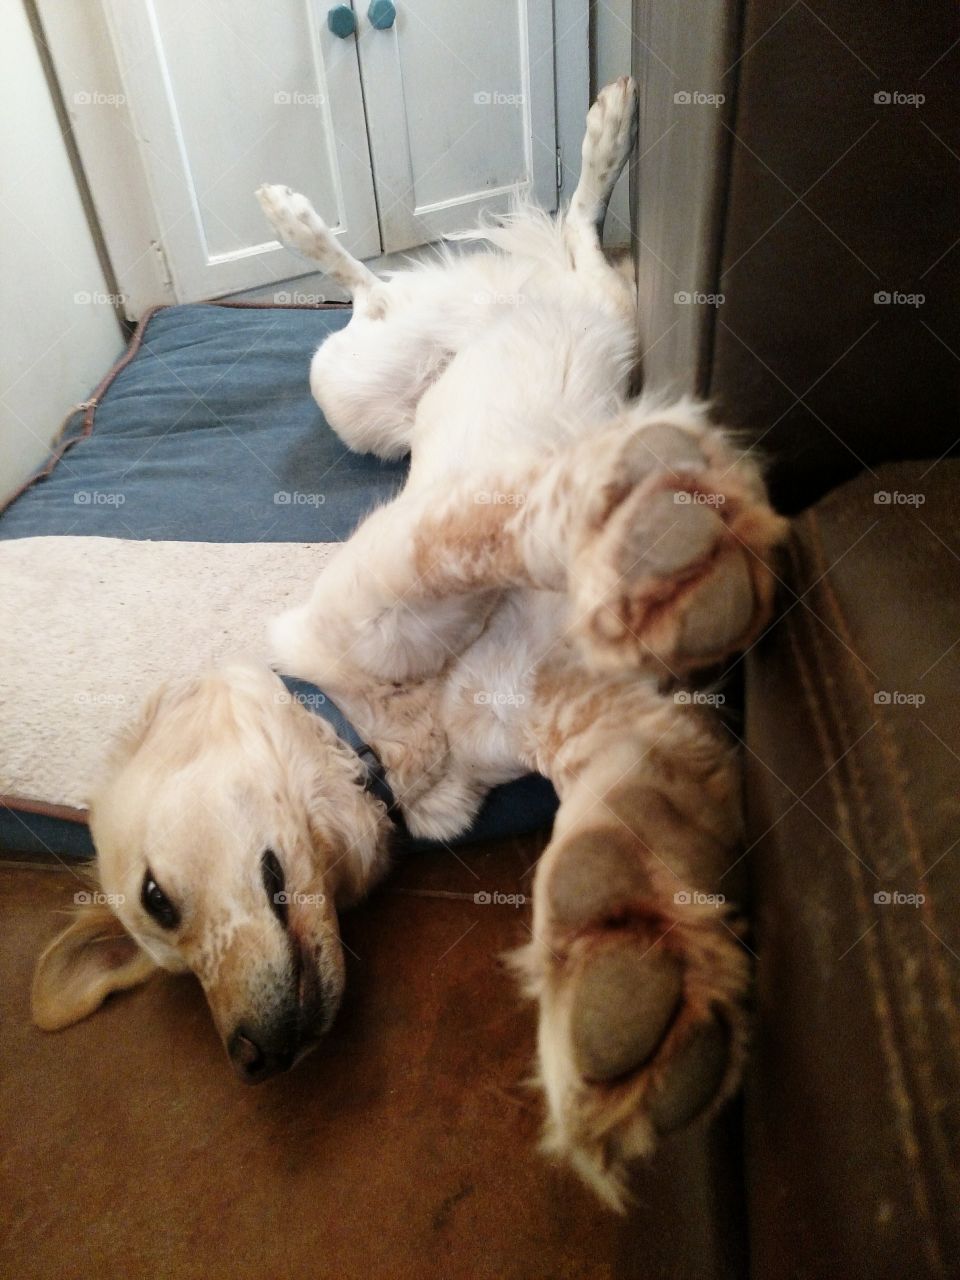 stretch pup